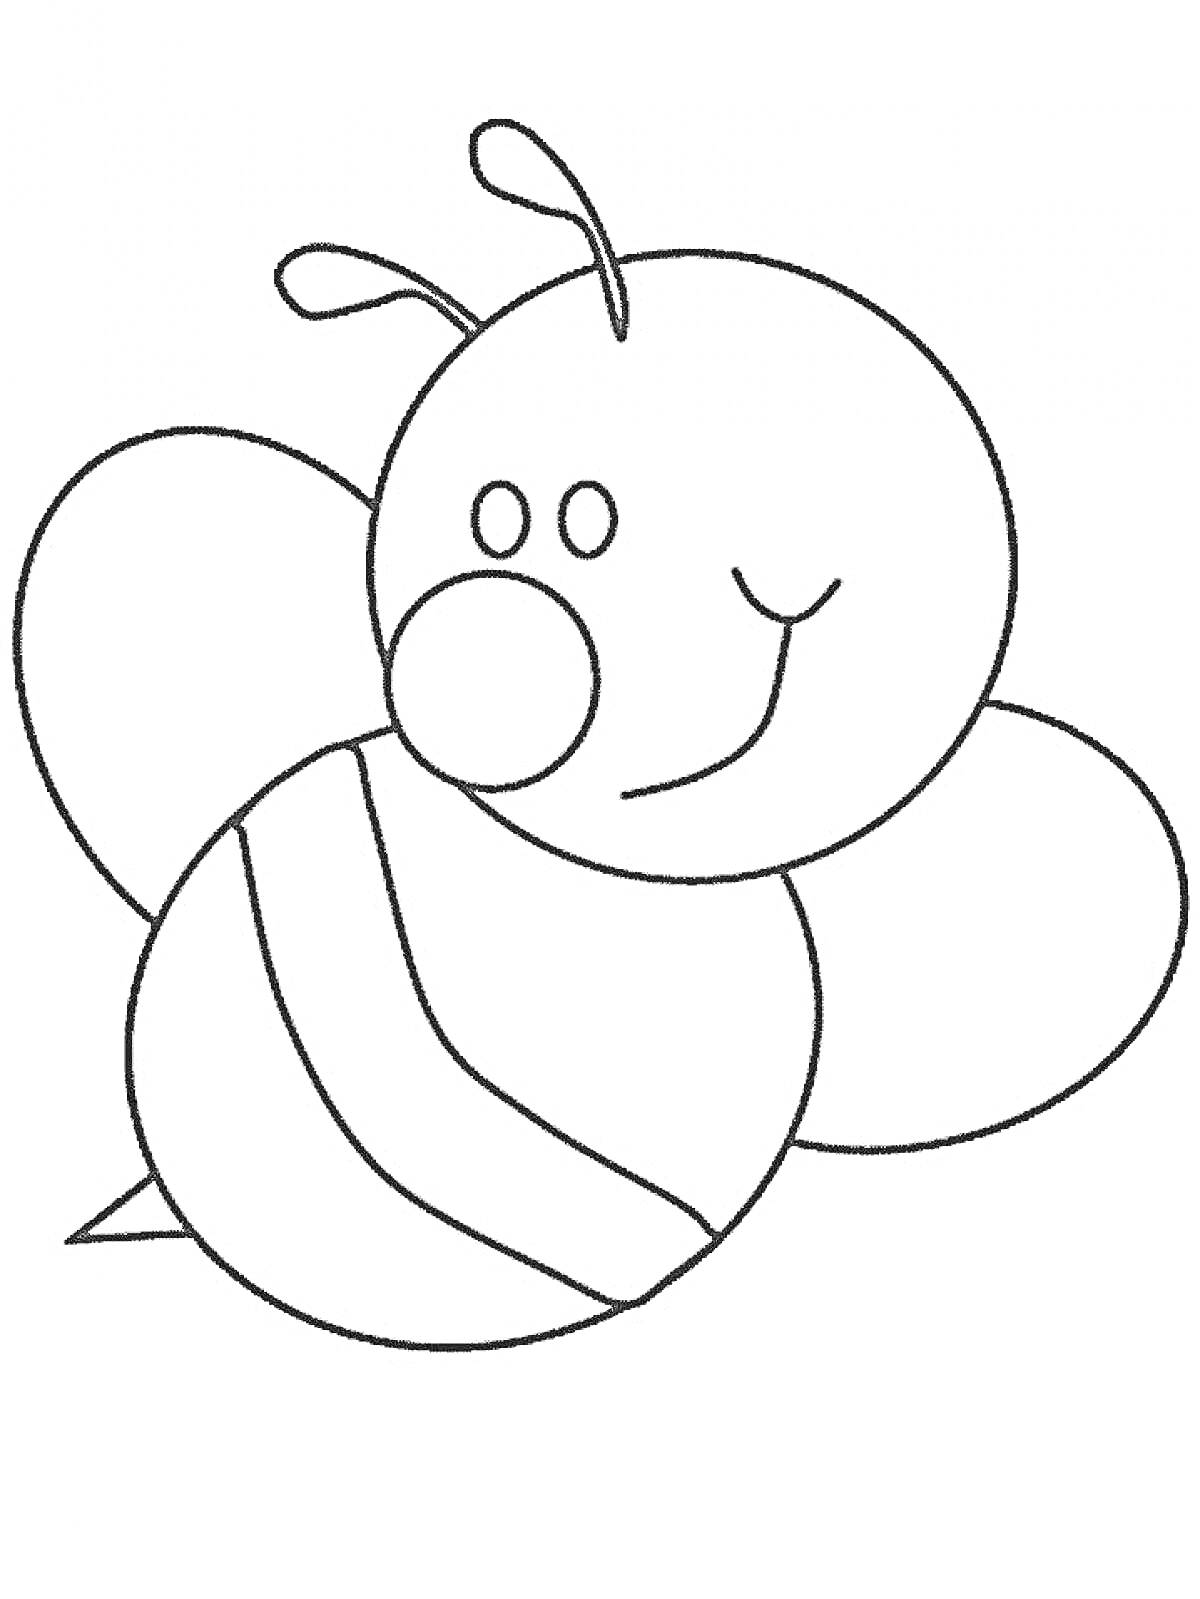 Раскраска Пчела с полосками, усиками и крыльями